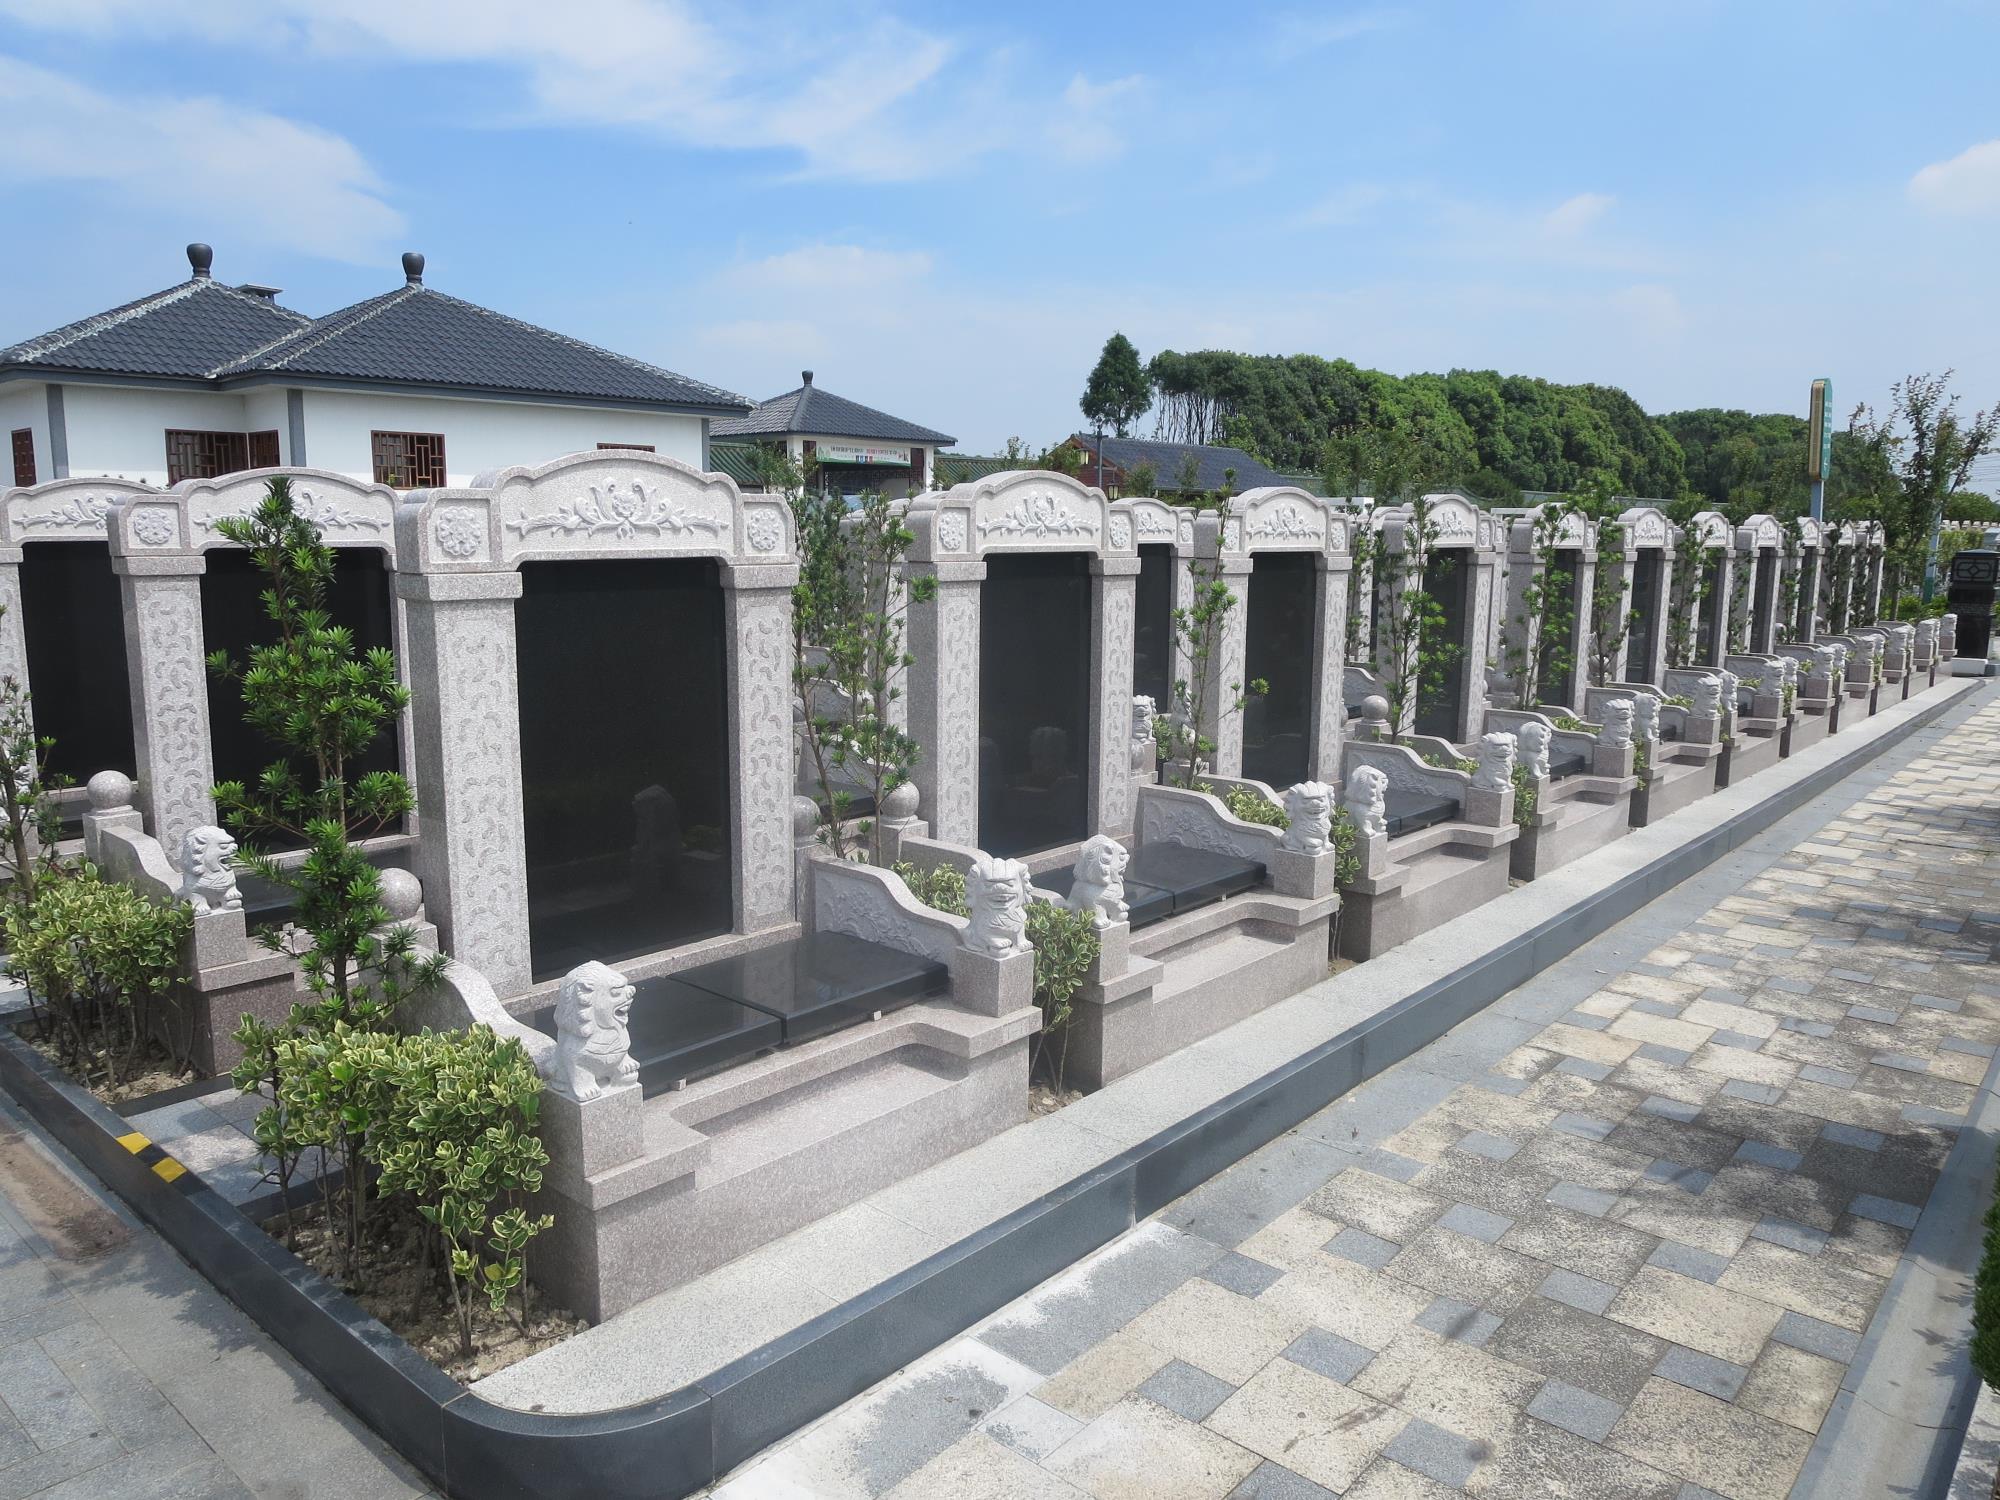 天寿陵园景观之艺术墓区-北京公墓网